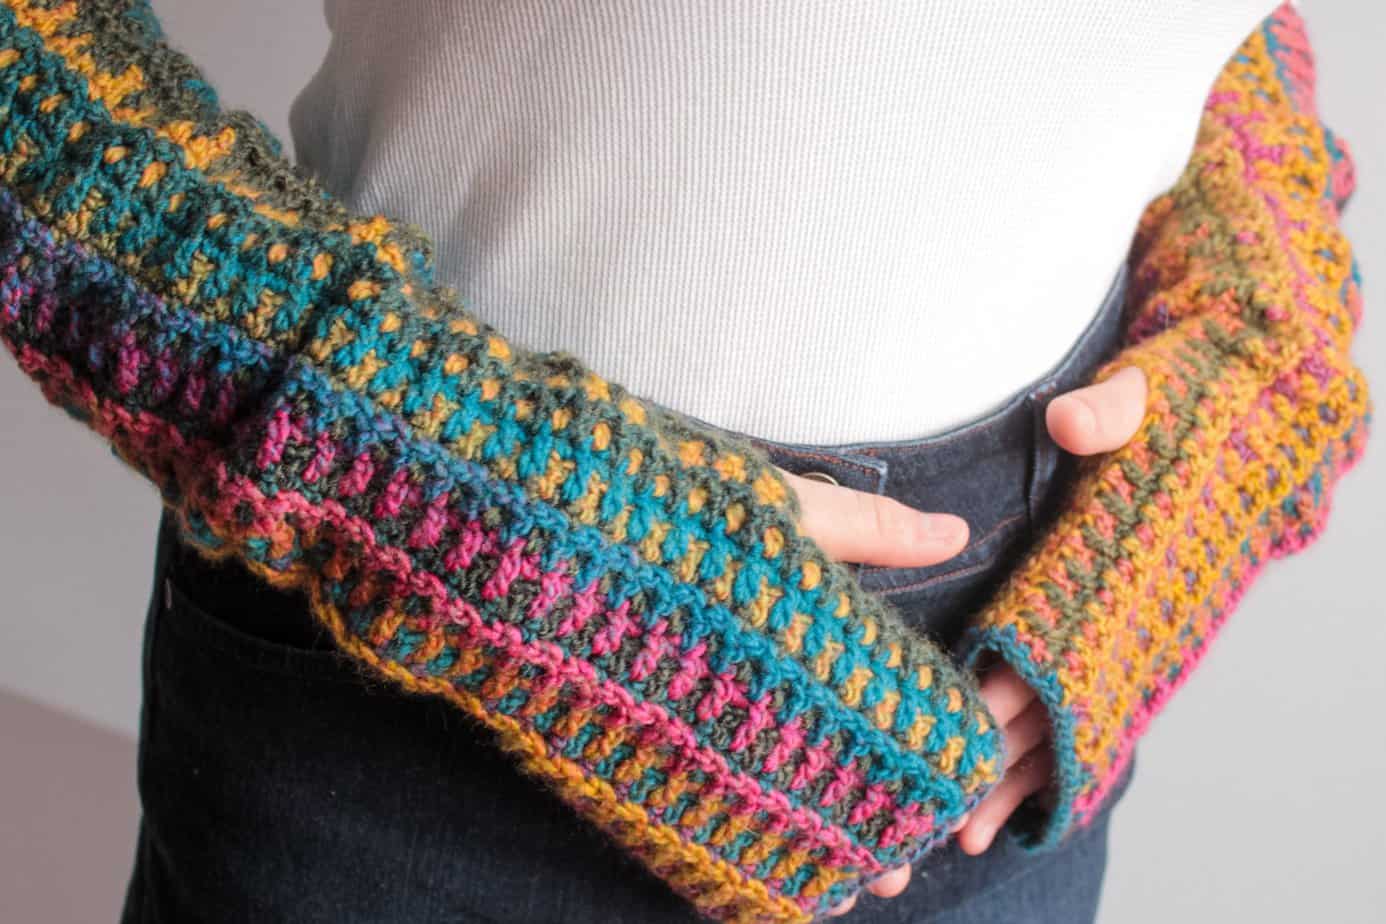 crochet arm warmers free pattern